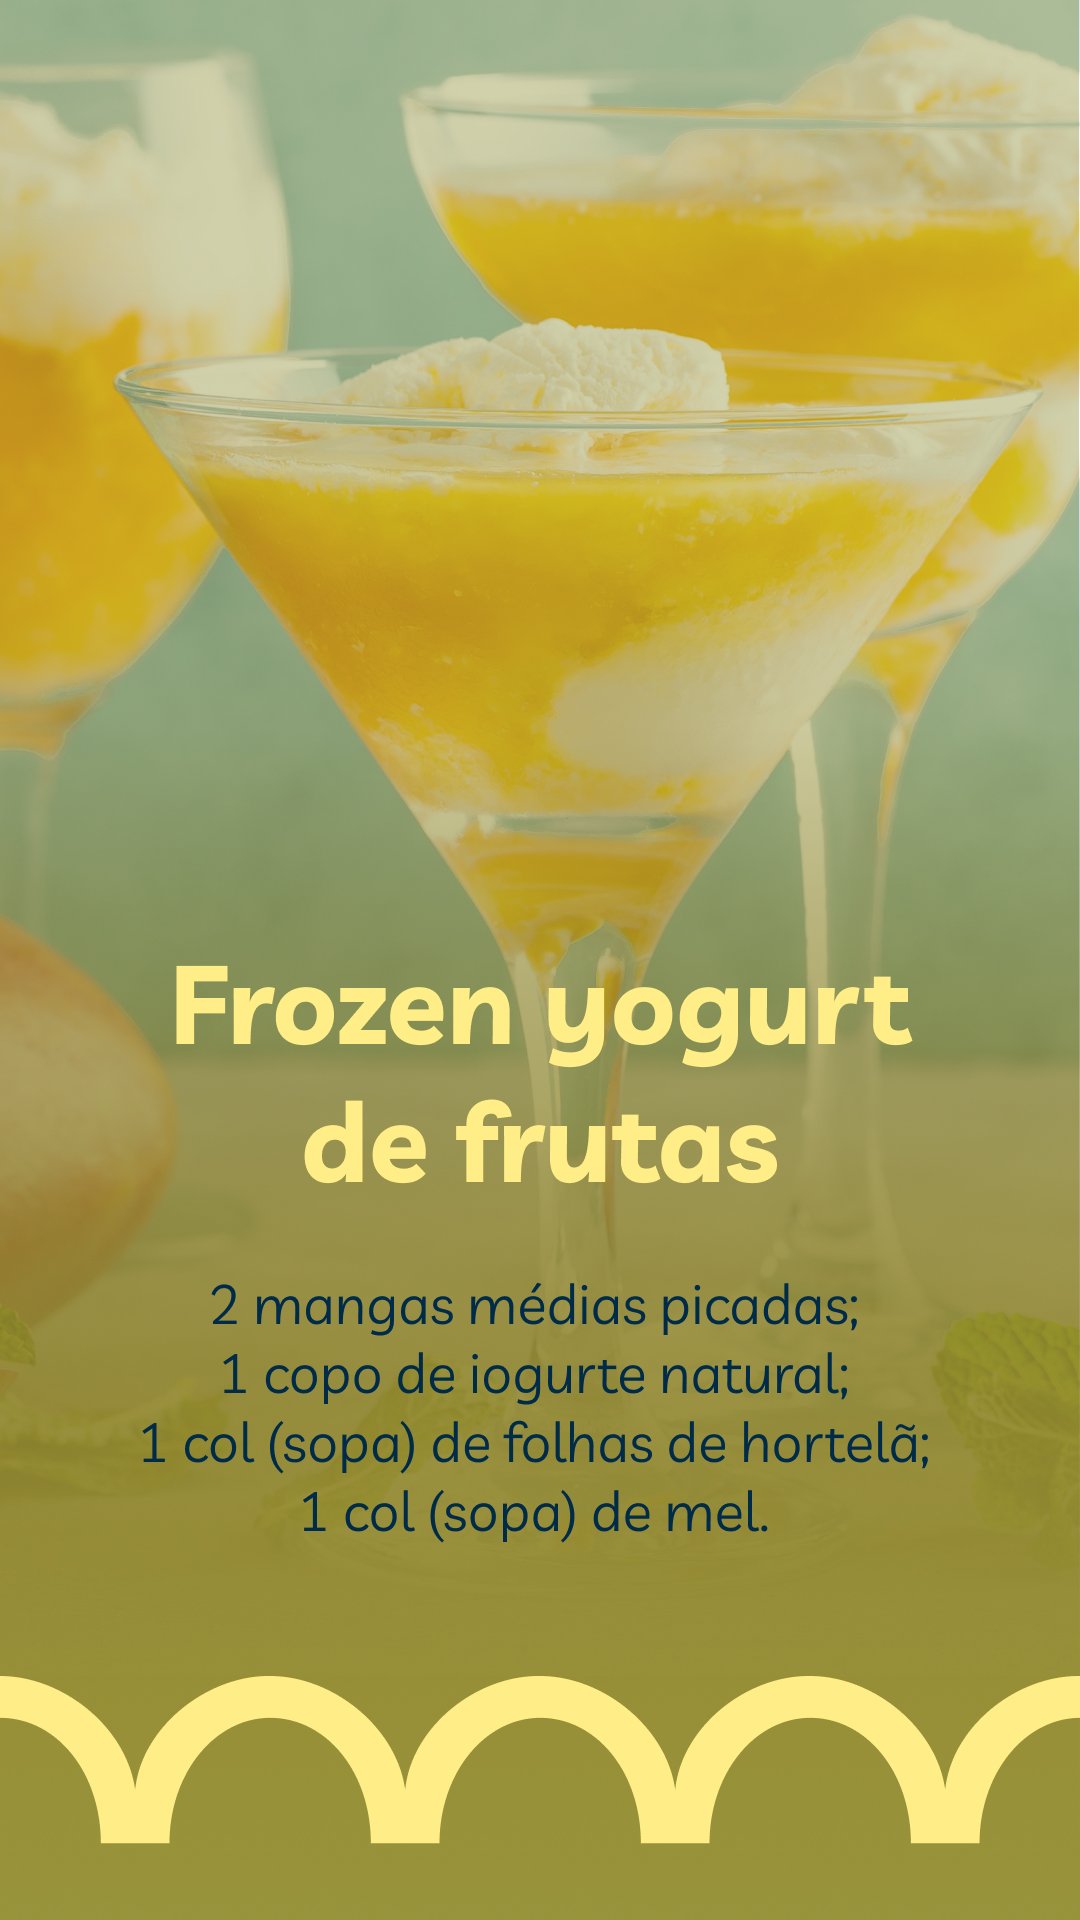 Frozen yogurt de frutas